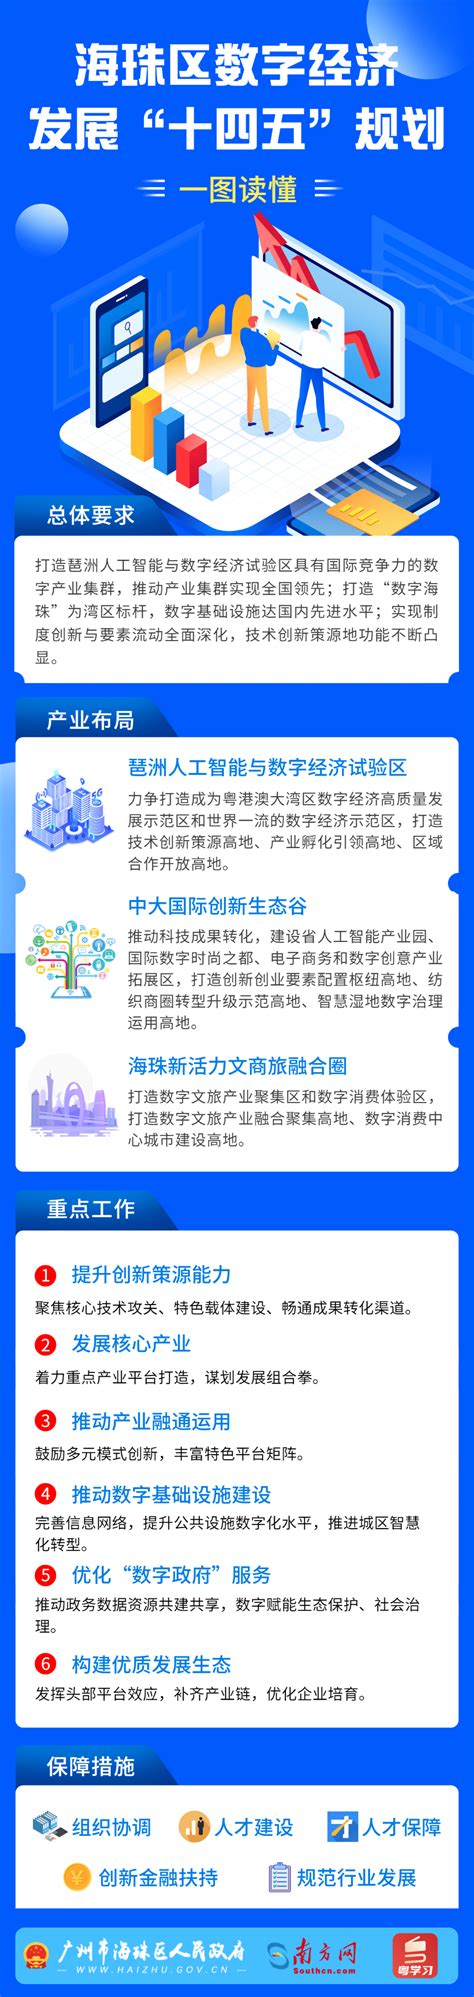 广州海珠区表彰一批高质量发展贡献集体凤凰网广东_凤凰网